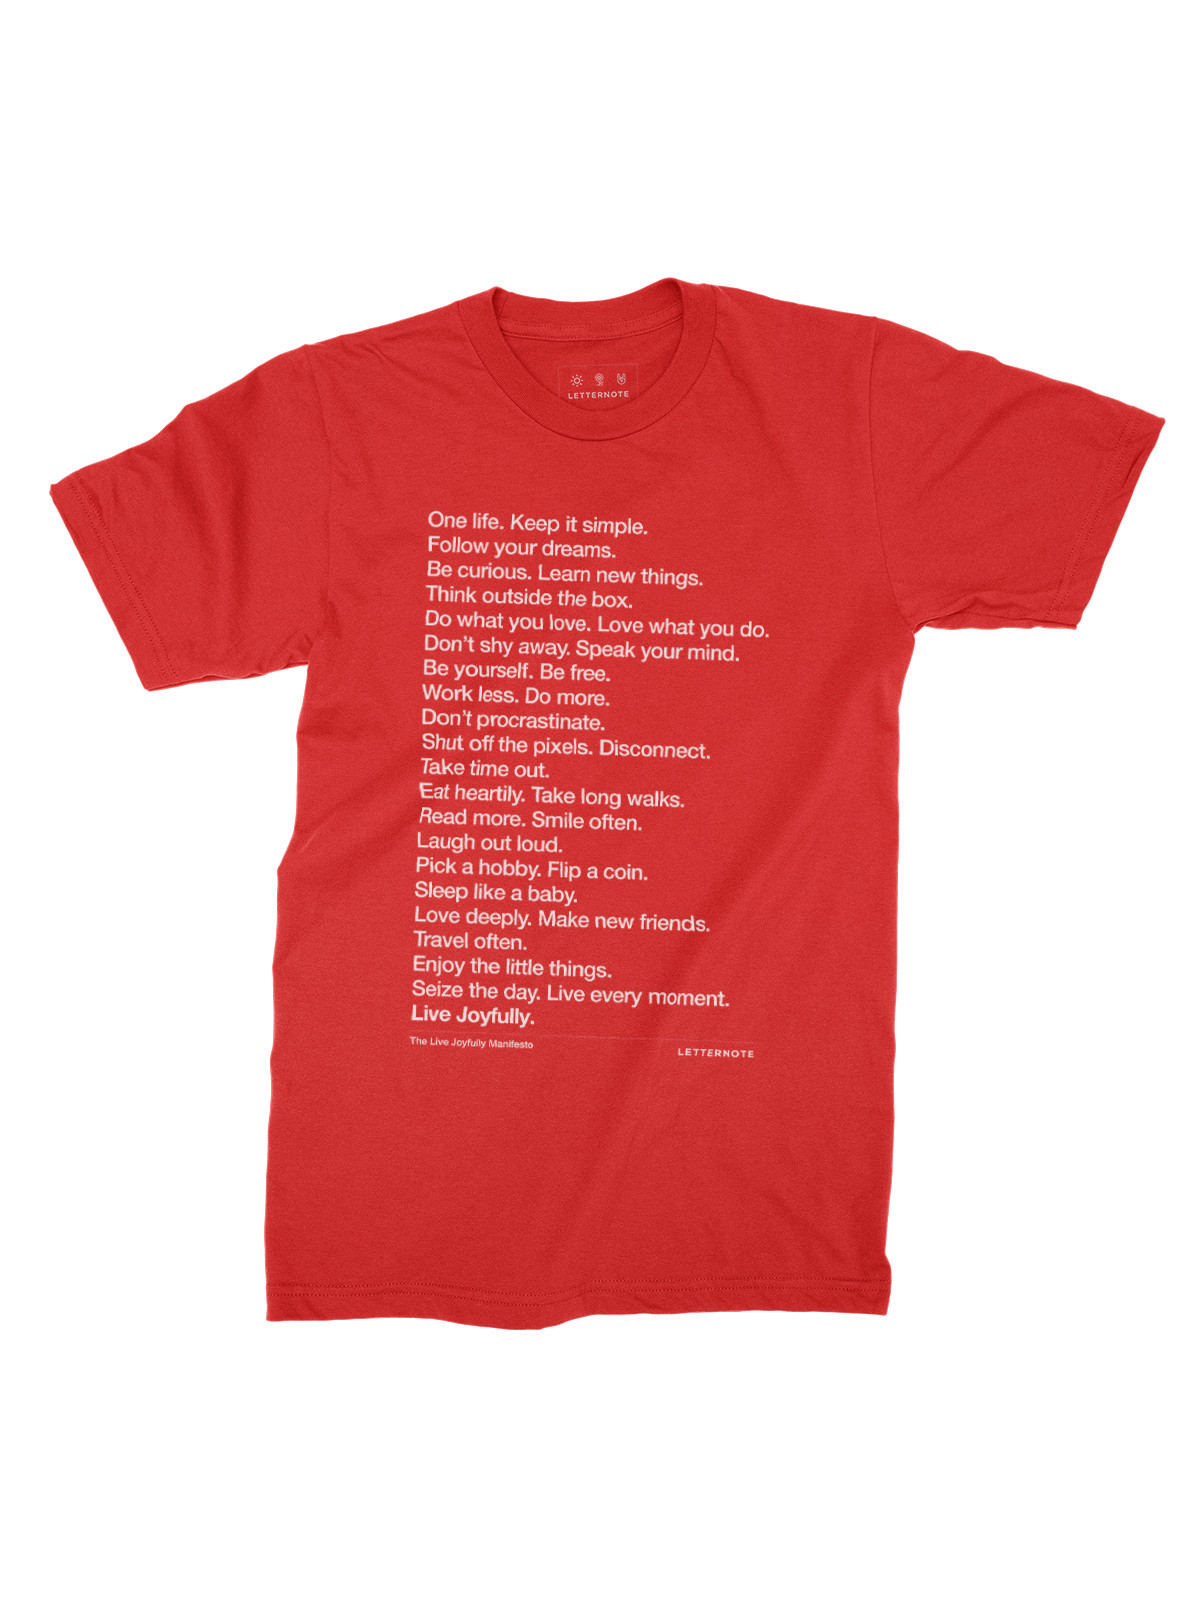 LetterNote Manifesto Men's Tshirt